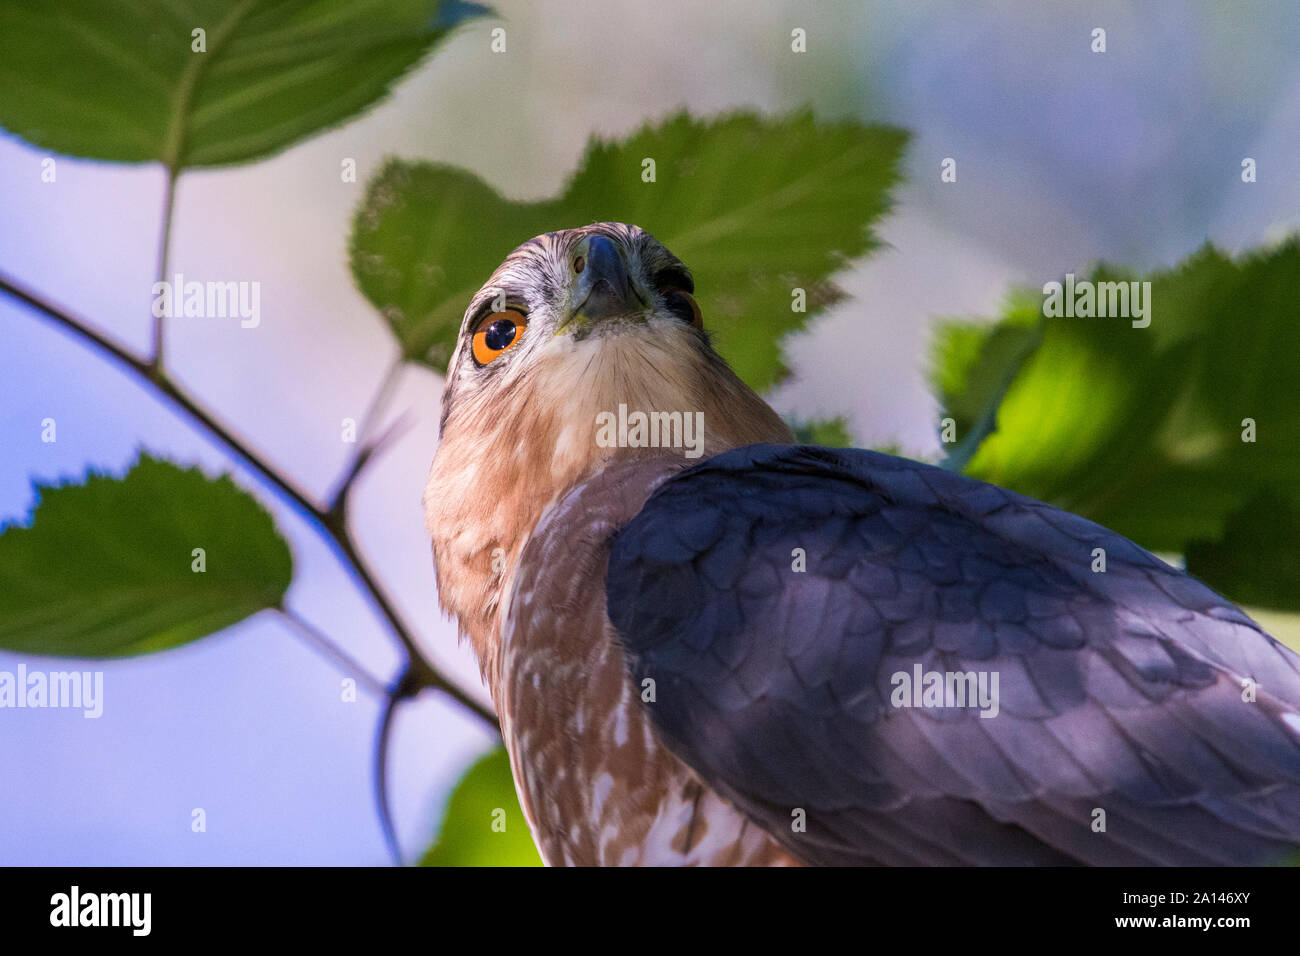 Cooper's hawk (Accipiter cooperii) portrait Stock Photo